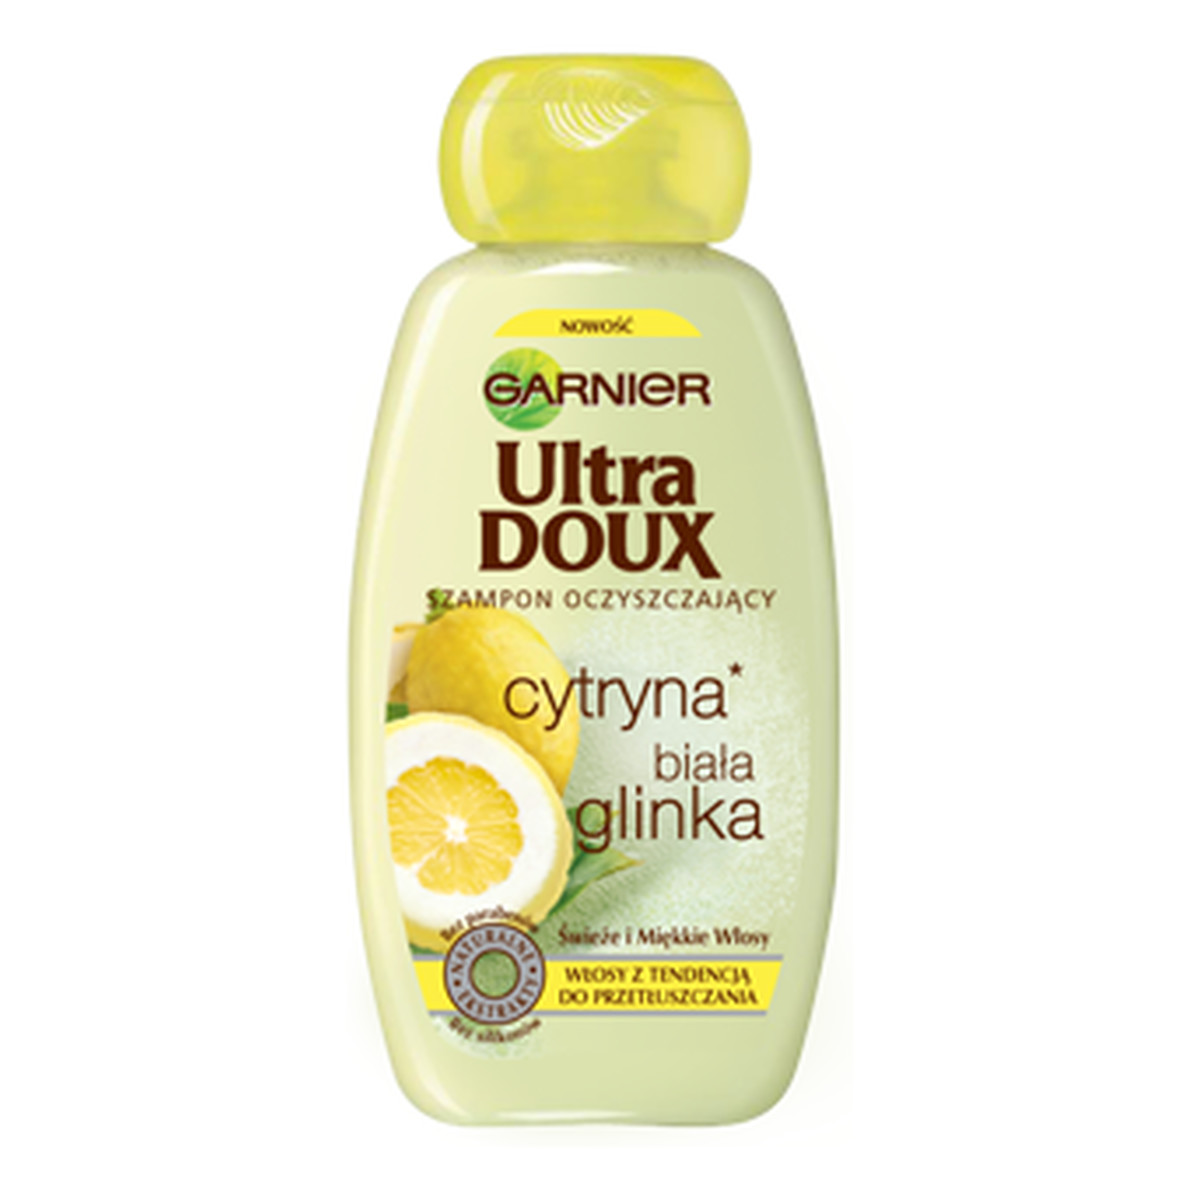 arnier ultra doux szampon oczyszczający biał